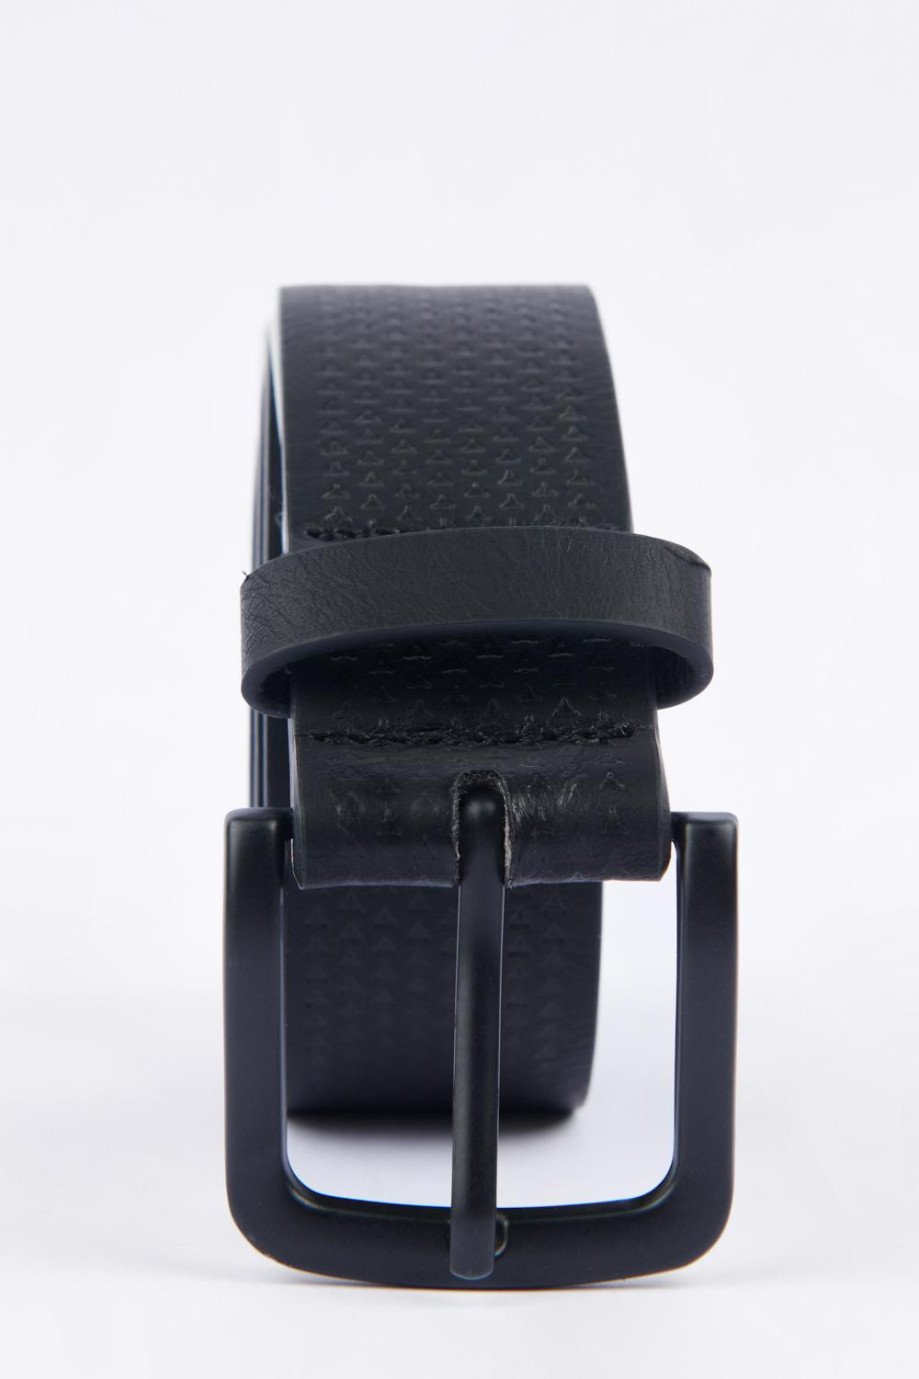 Cinturón sintético gris intenso con texturas y hebilla metálica